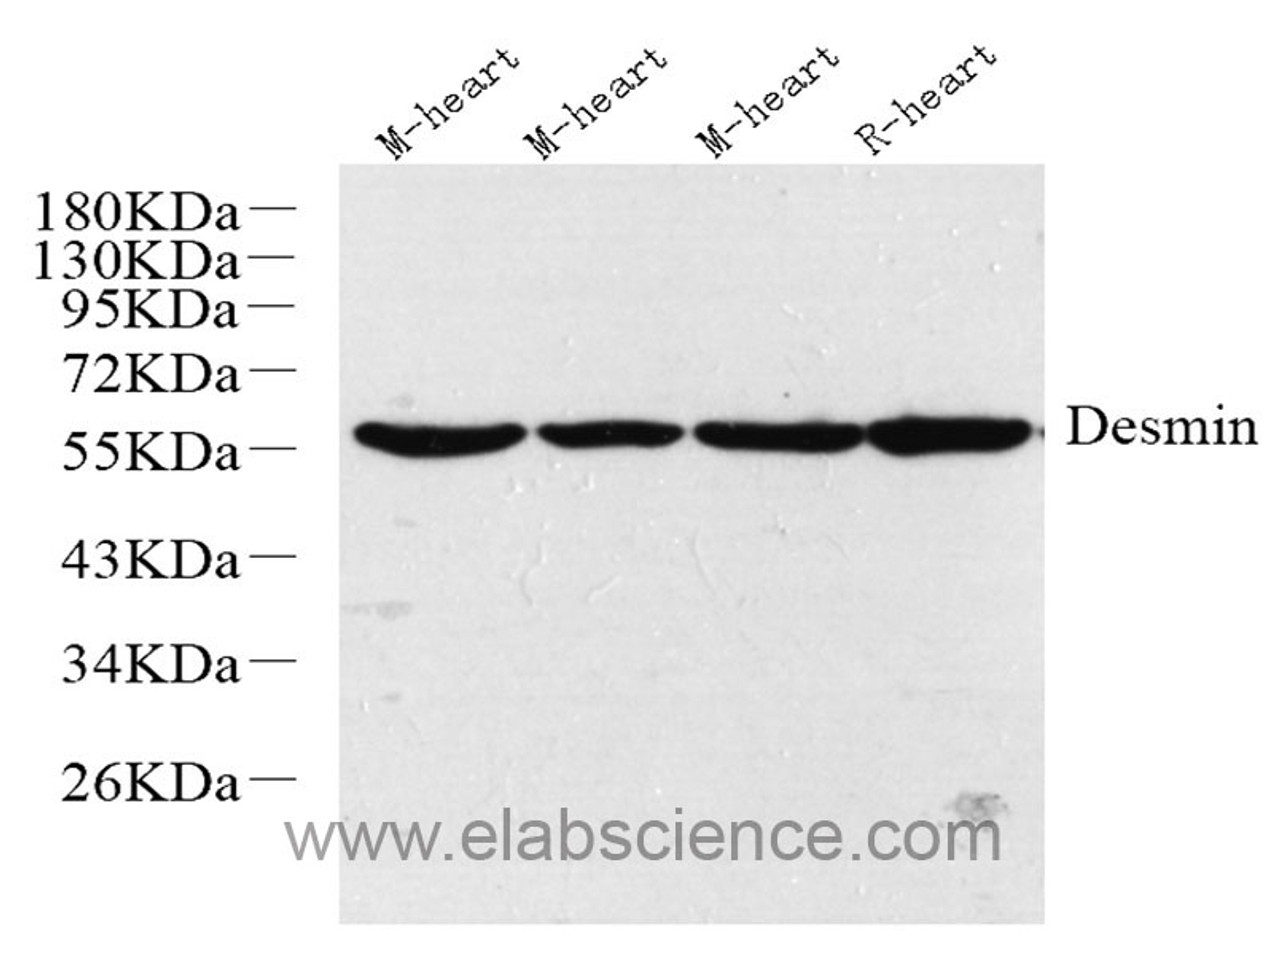 Western Blot analysis of various samples using Desmin Polyclonal Antibody at dilution of 1:1000.